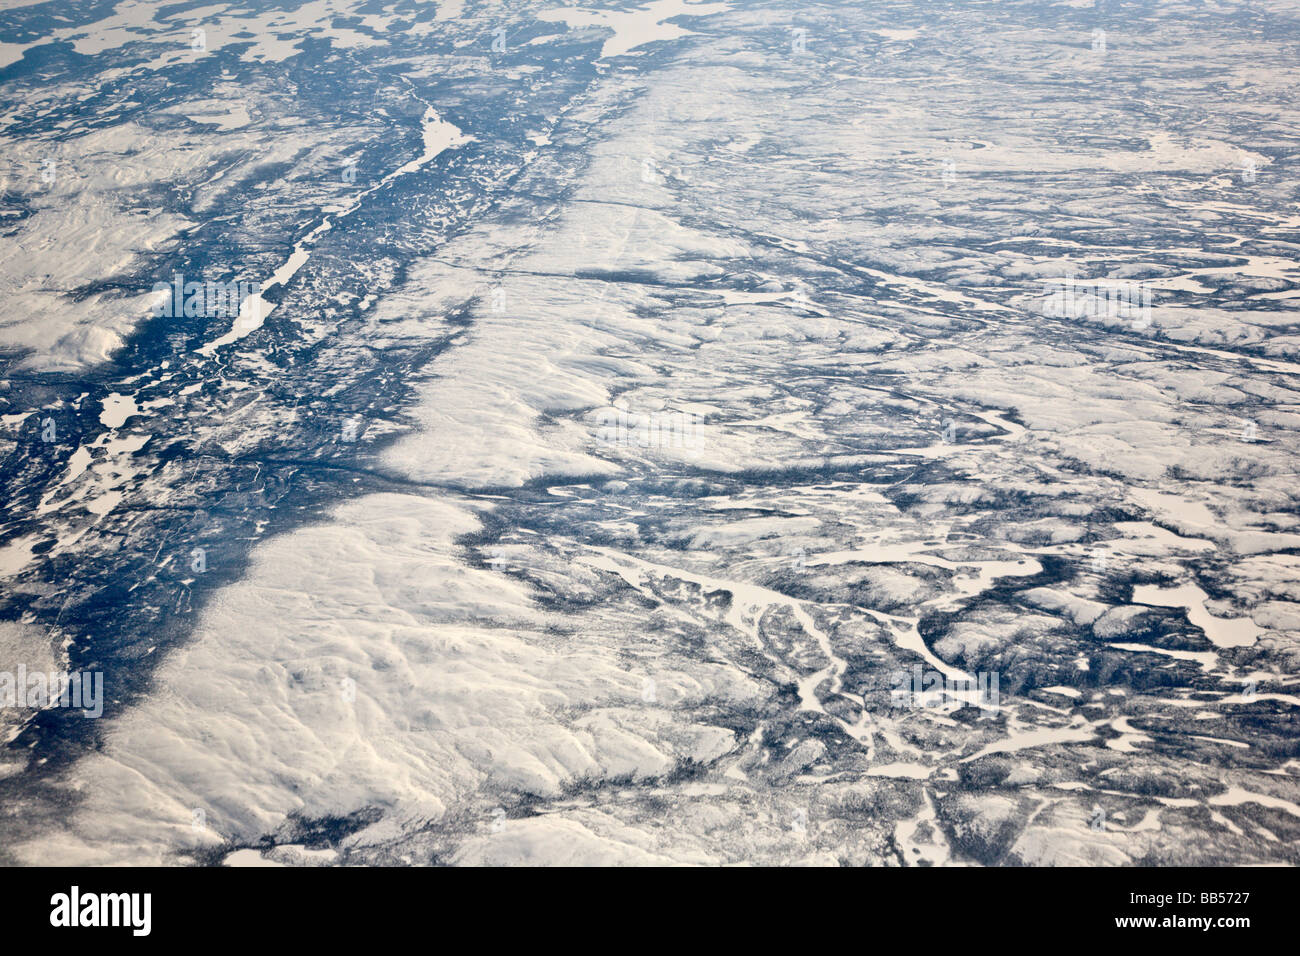 L'awe-inspiring calotte polaire peut être vu dans cette vue à partir d'un avion, en provenance de Francfort, Allemagne, à Washington, DC. Banque D'Images